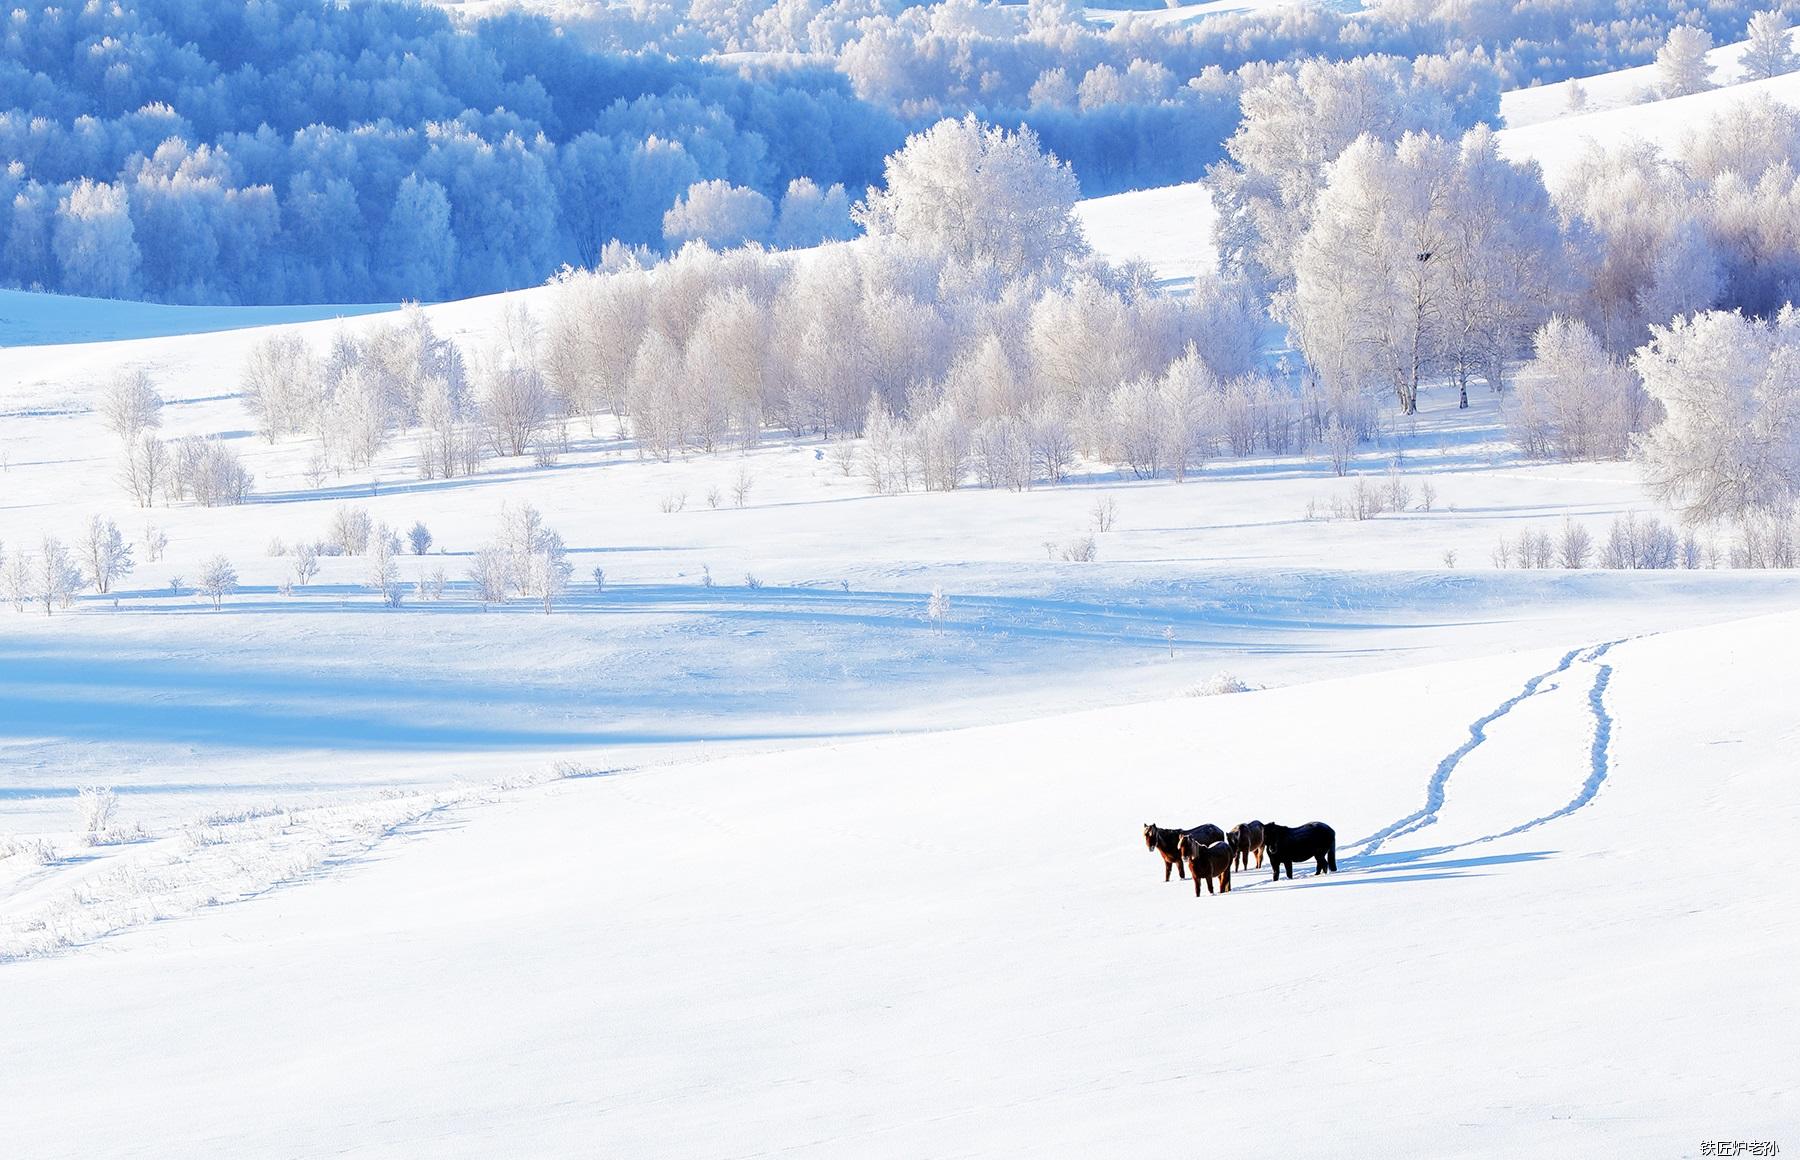 银装素裹的冬季,大雪把人迹覆盖在雪下,呈现最原始的自然环境.